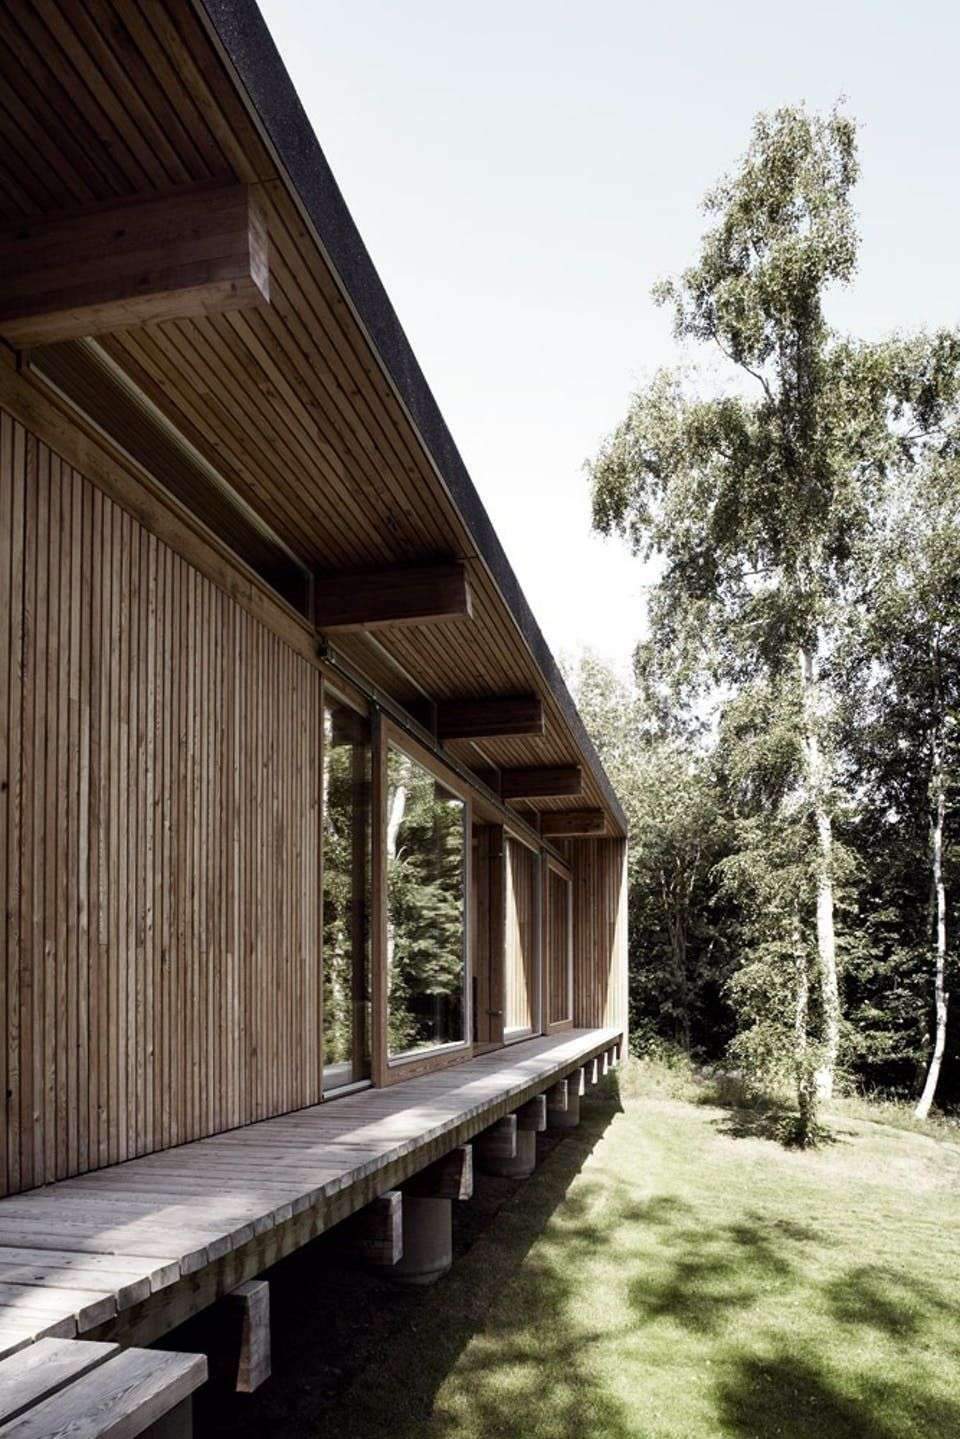 Arkitekt og snedker Mads Kaltofts fritidshus i Asnæs viser tydeligt hans kærlighed til godt…